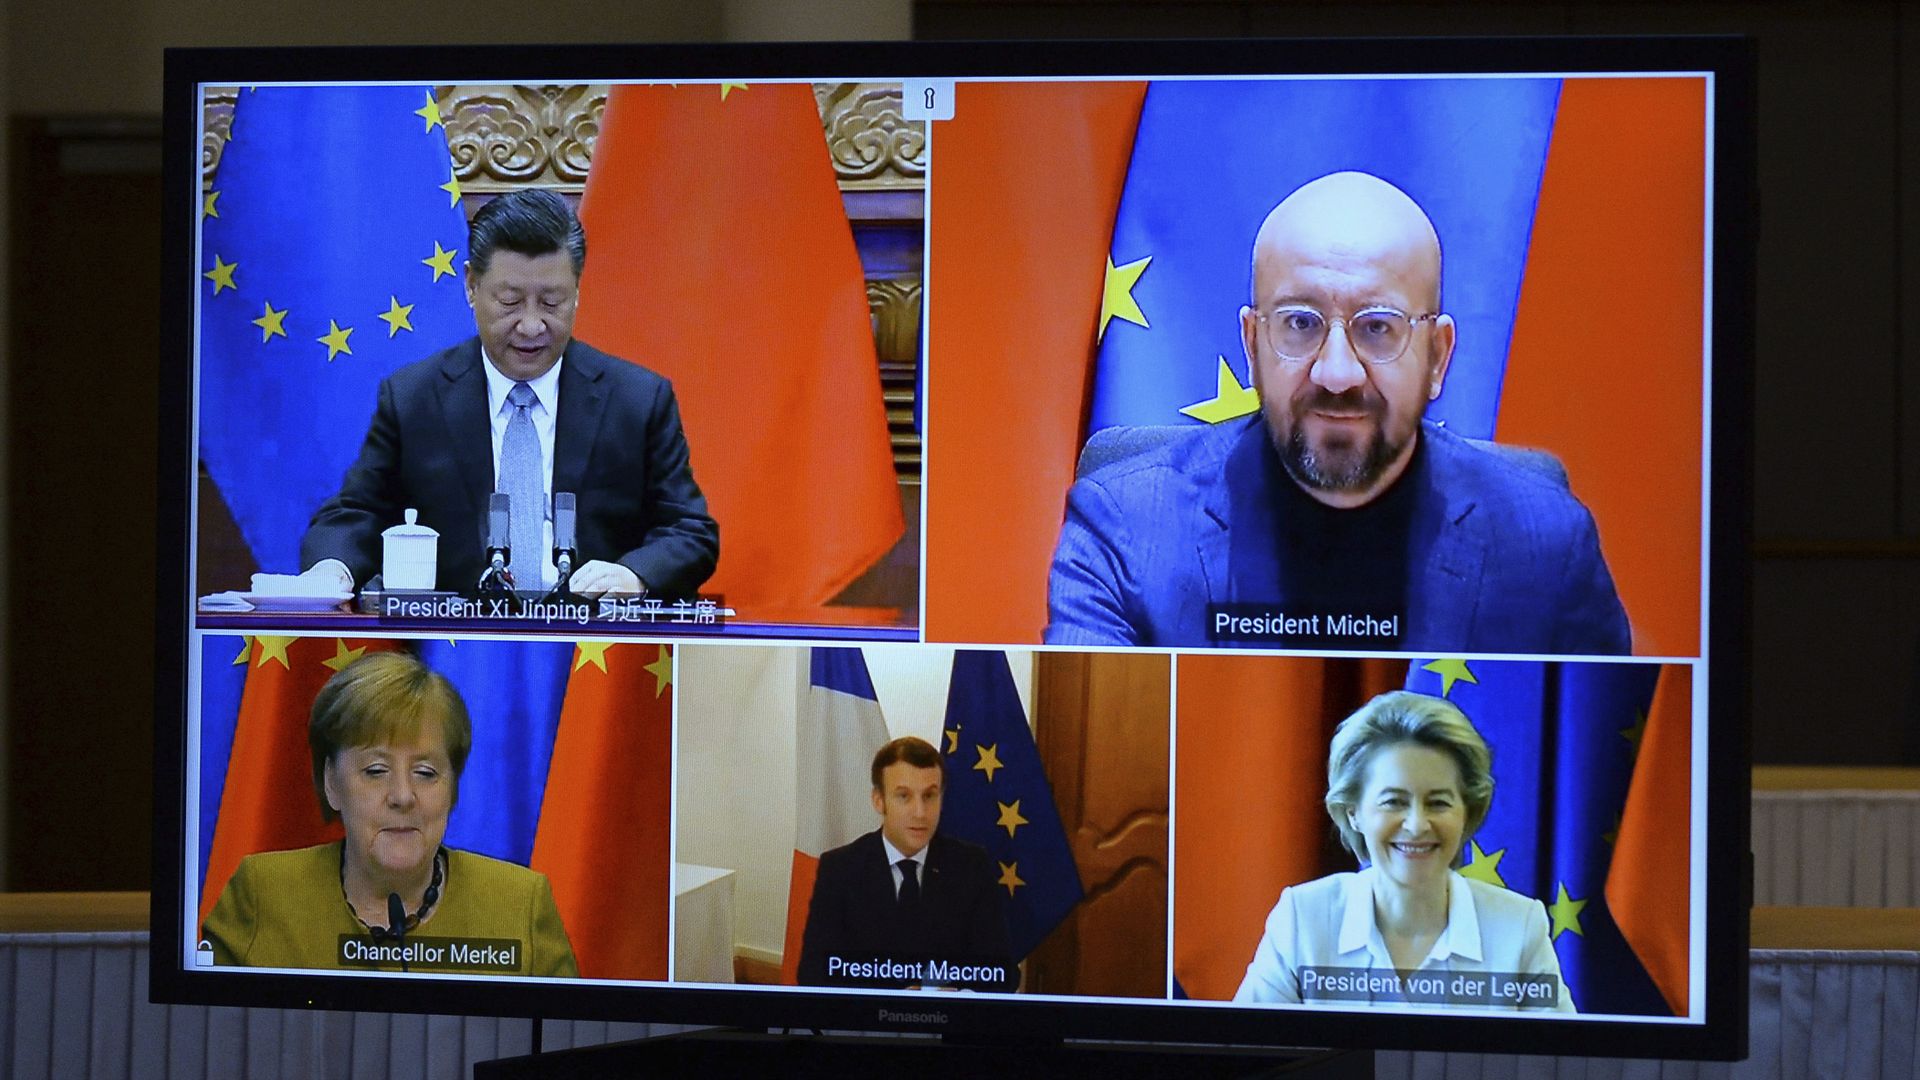 European leaders meet via Zoom with Xi Jinping